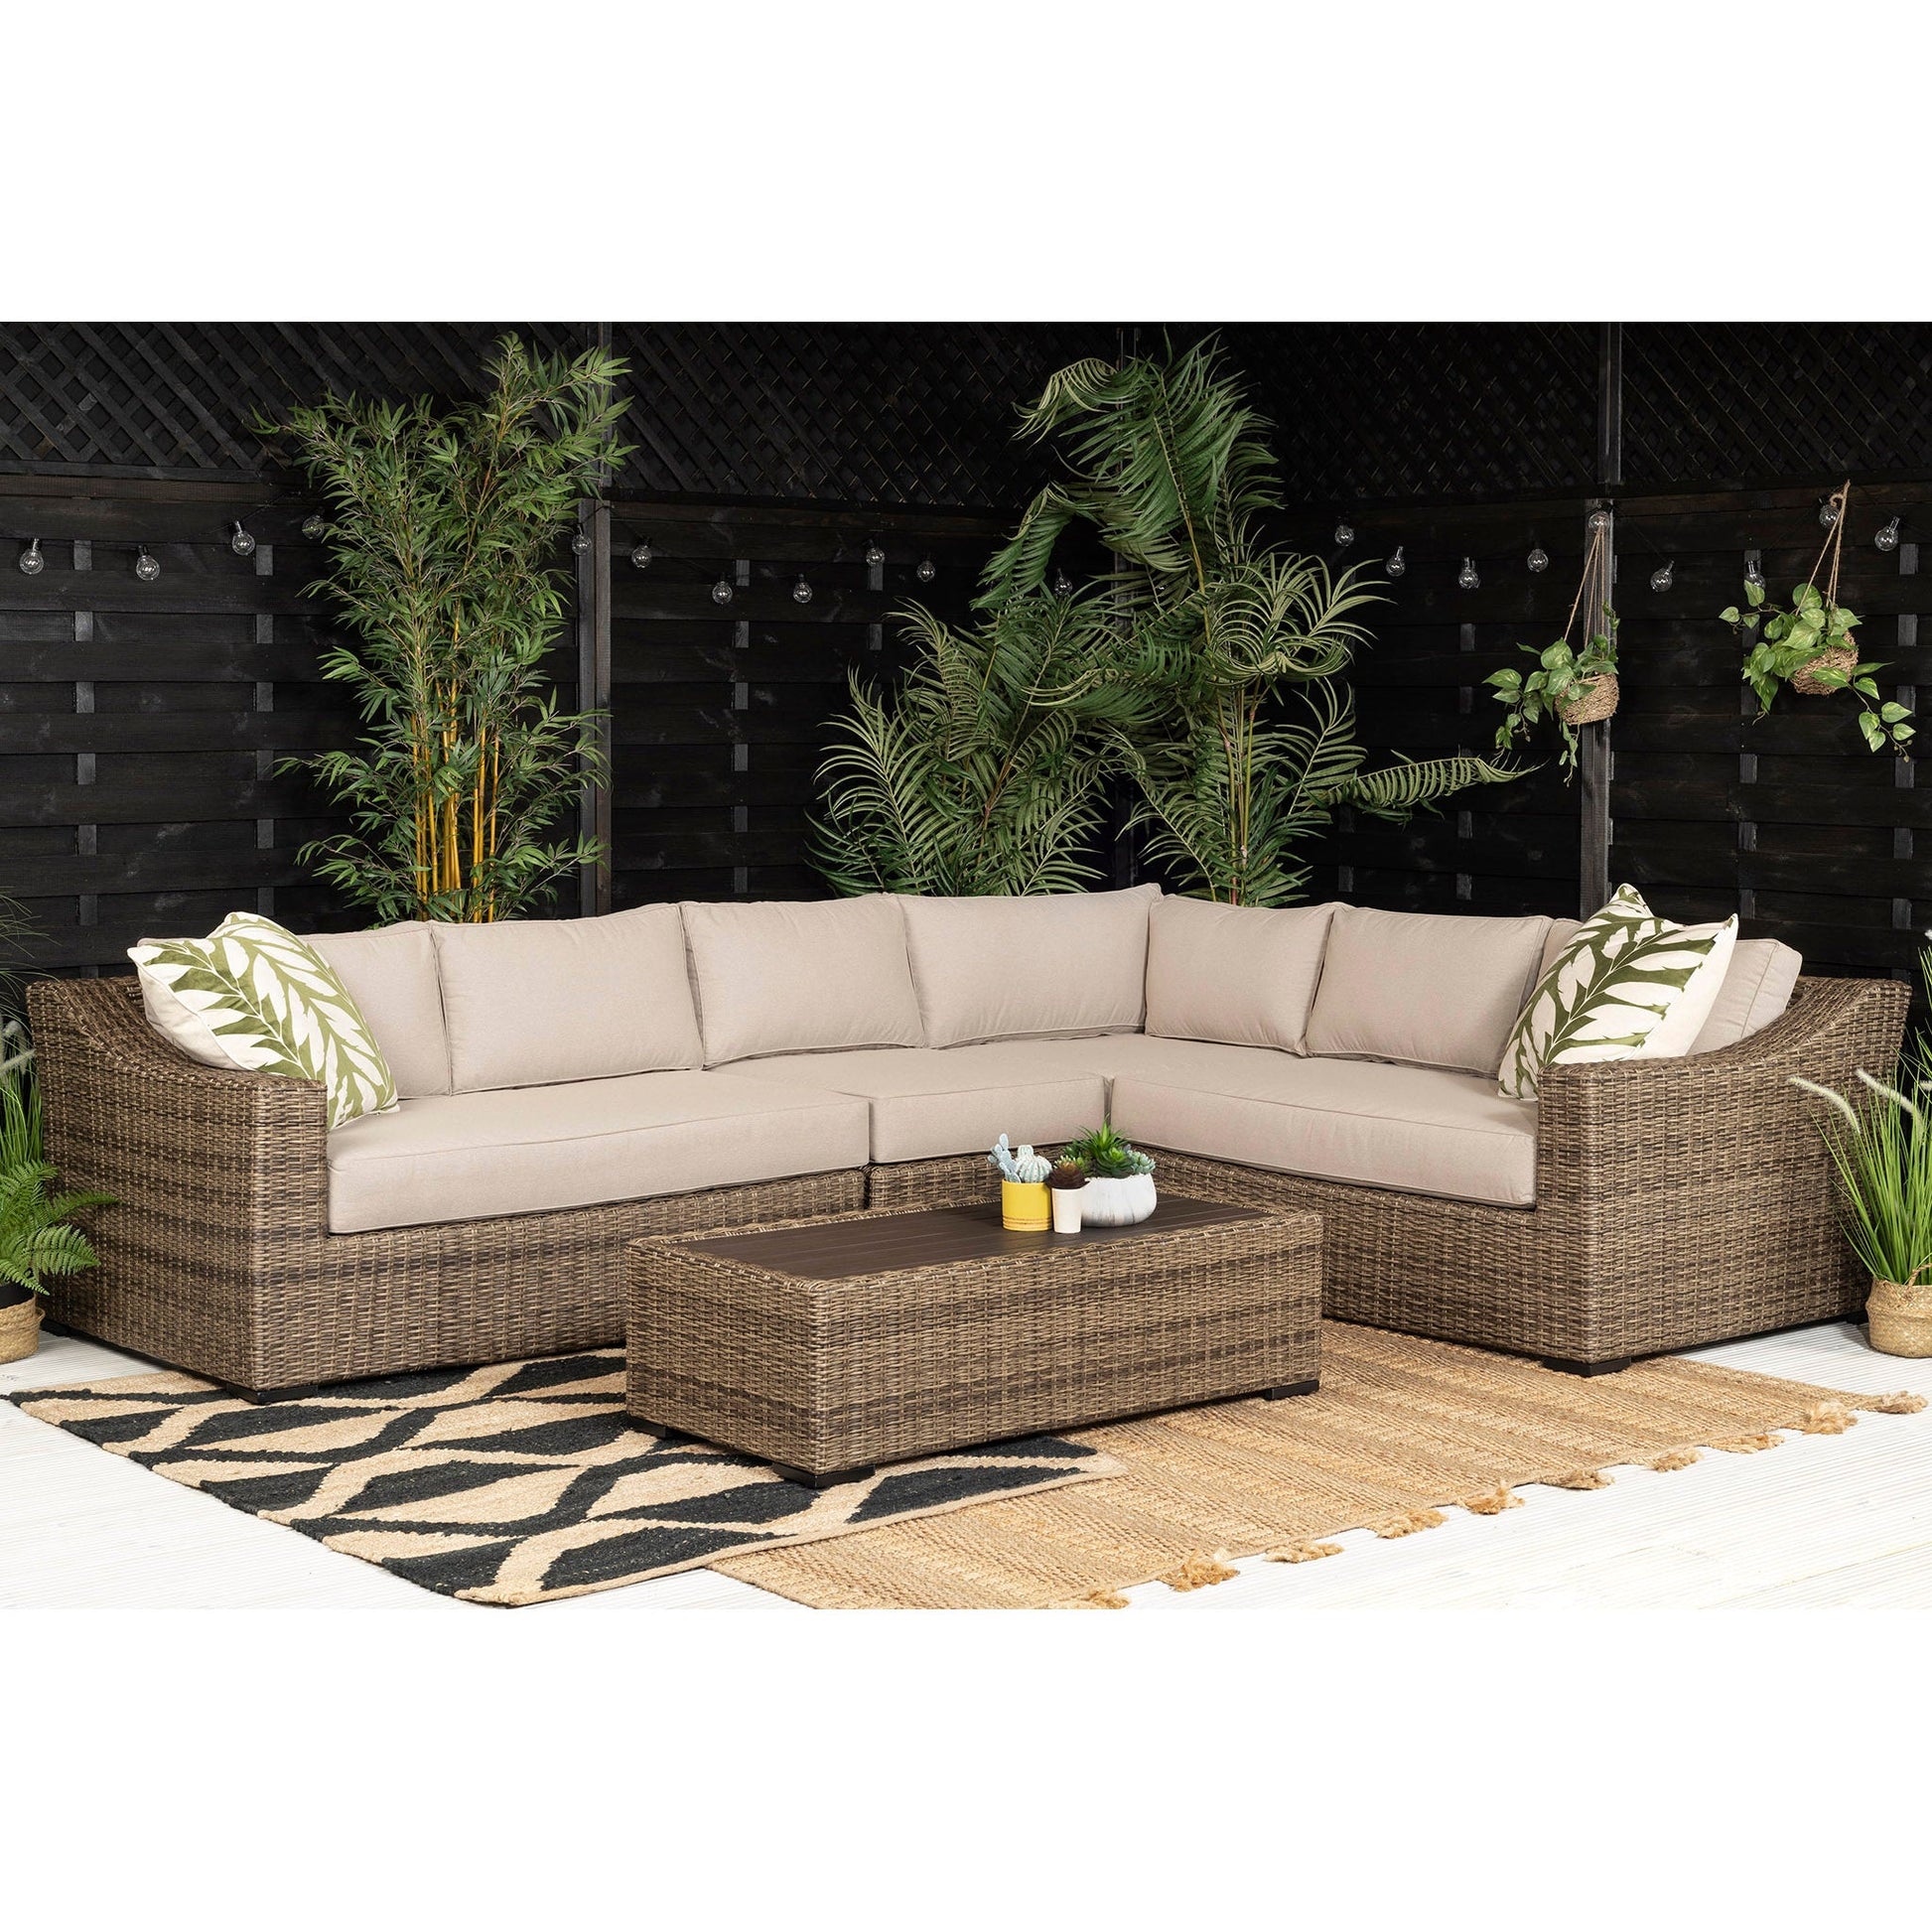 Hall Extra Large Modular Corner Sofa with Coffee Table in Brown Rattan - Italiancityfurniture